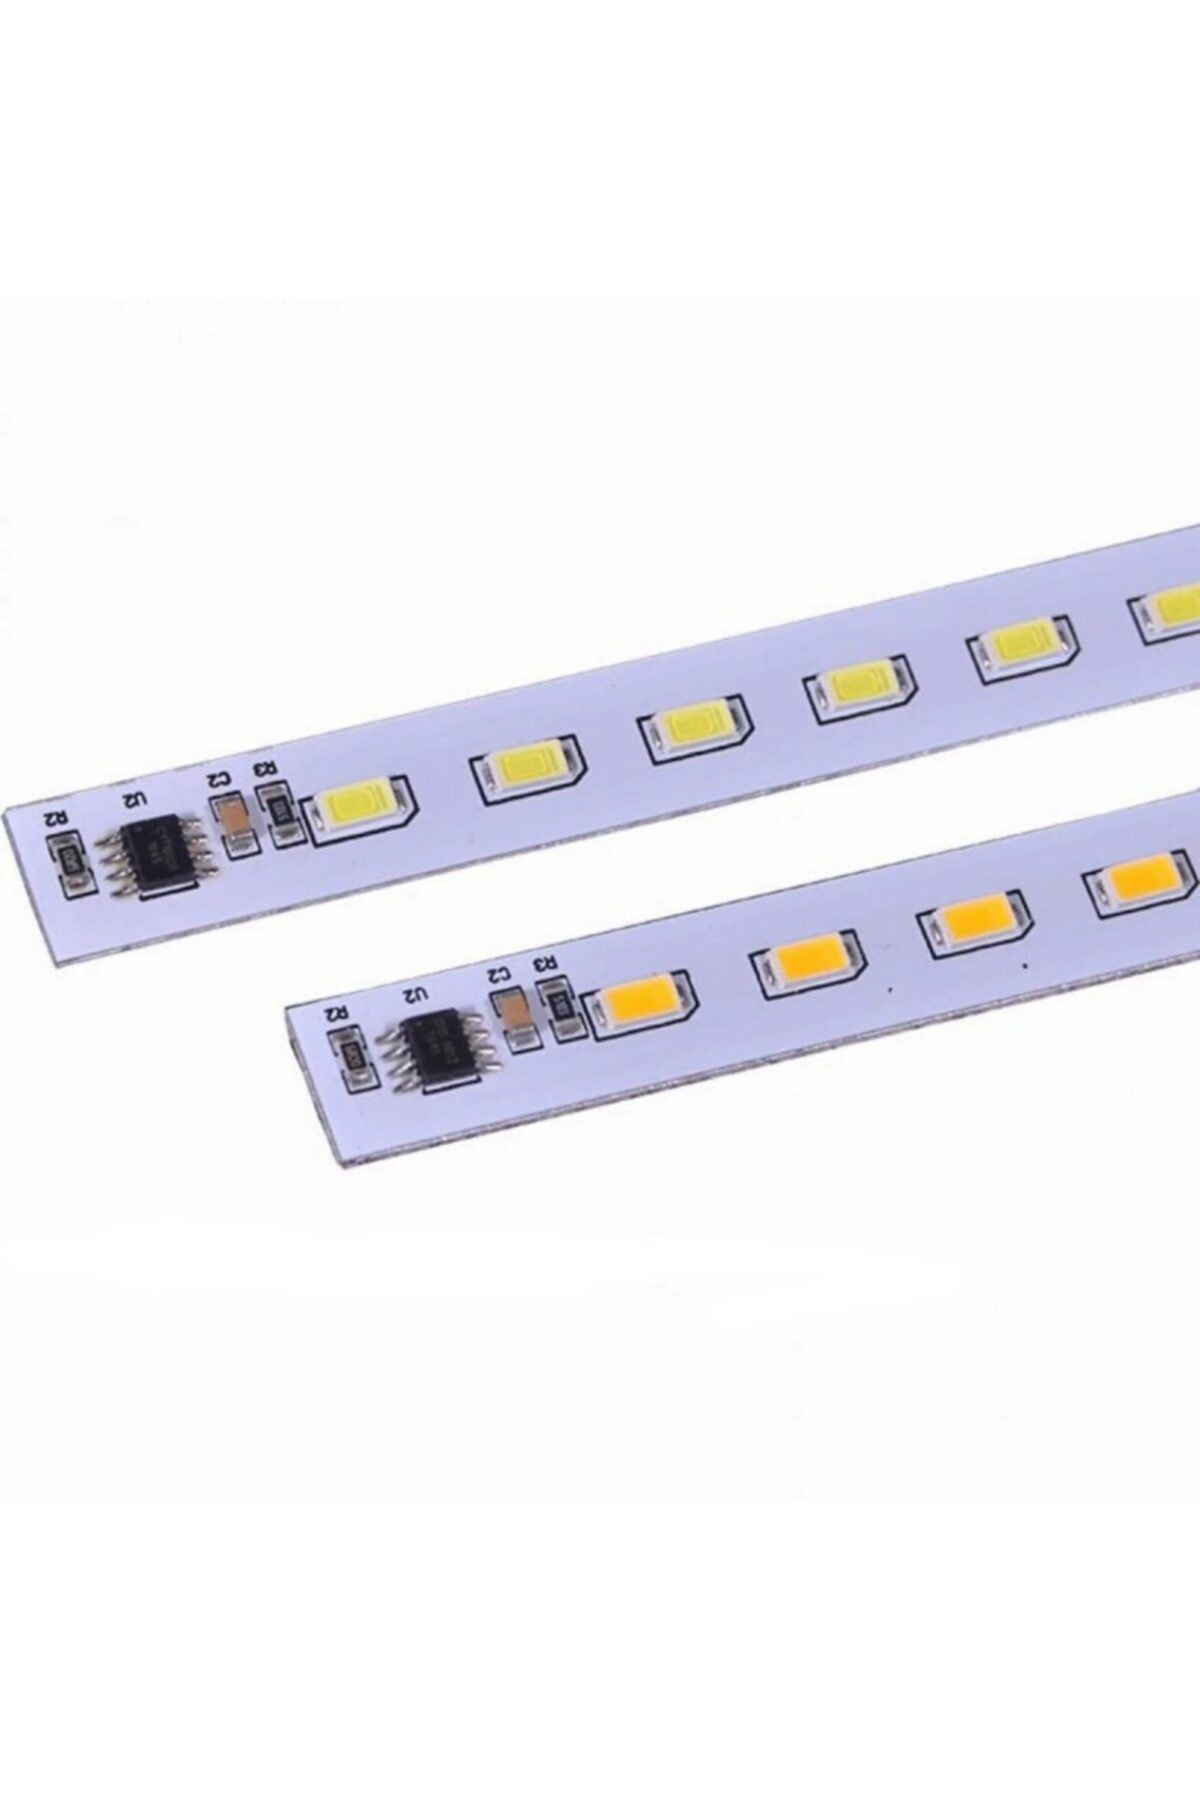 DORA LED 220 Volt Dim Edilebilir Led Bar Alüminyum Çubuk Led 220 V 80 Led (beyaz) (1m) KASA